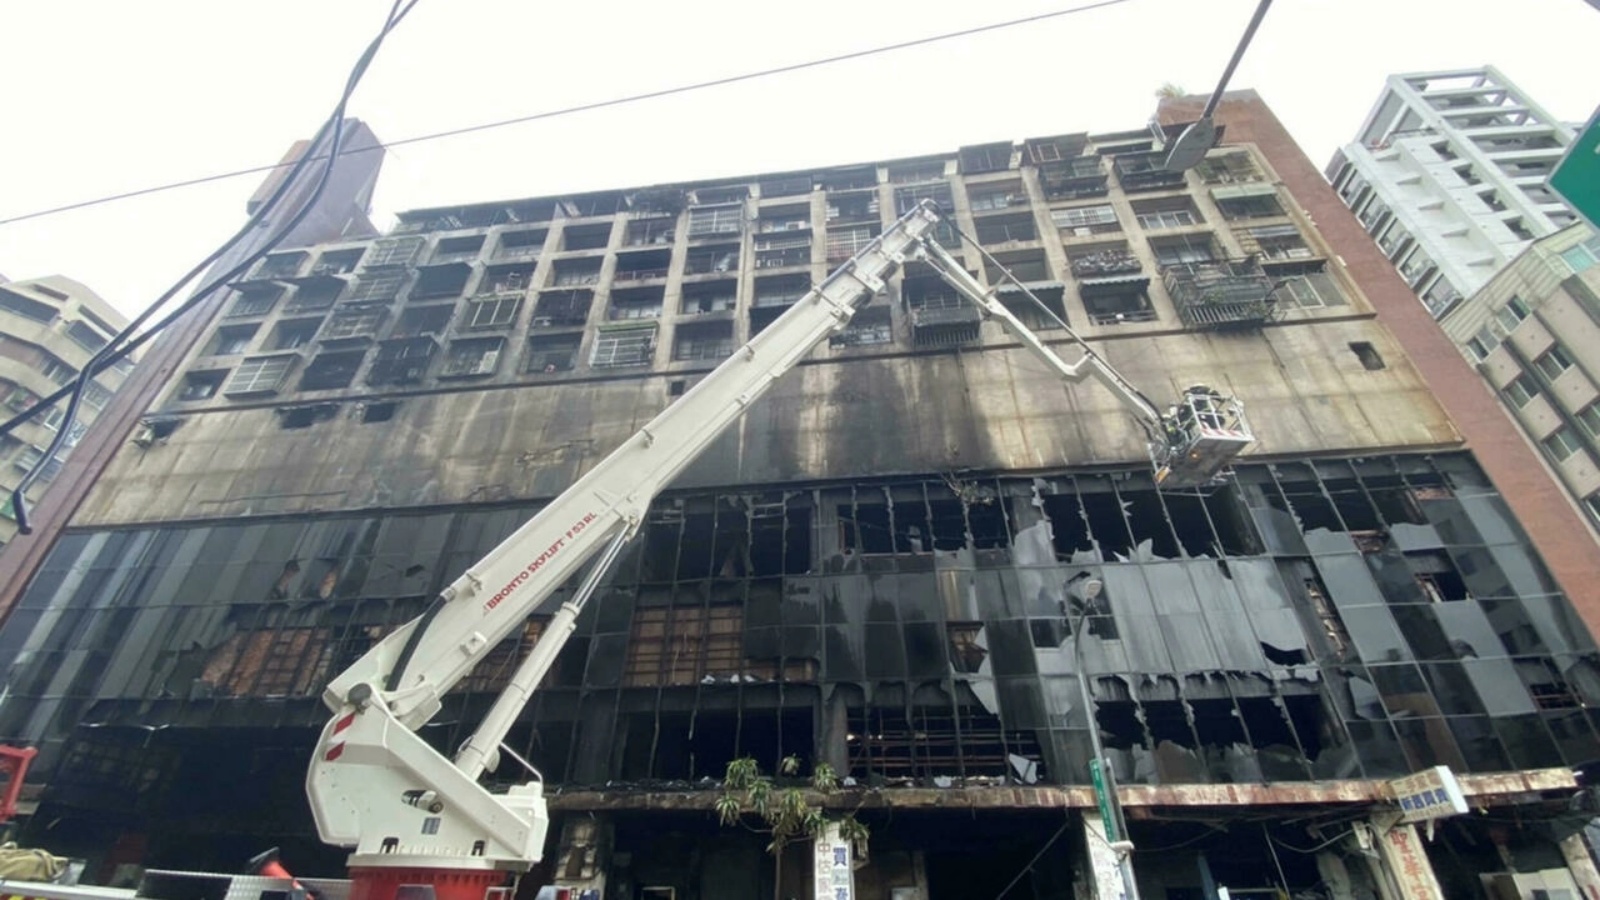 حريق في مبنى متهالك يستخدم لأغراض متنوعة في جنوب جزيرة تايوان. بتاريخ 15 تشرين الأول/ أكتوبر 2021.